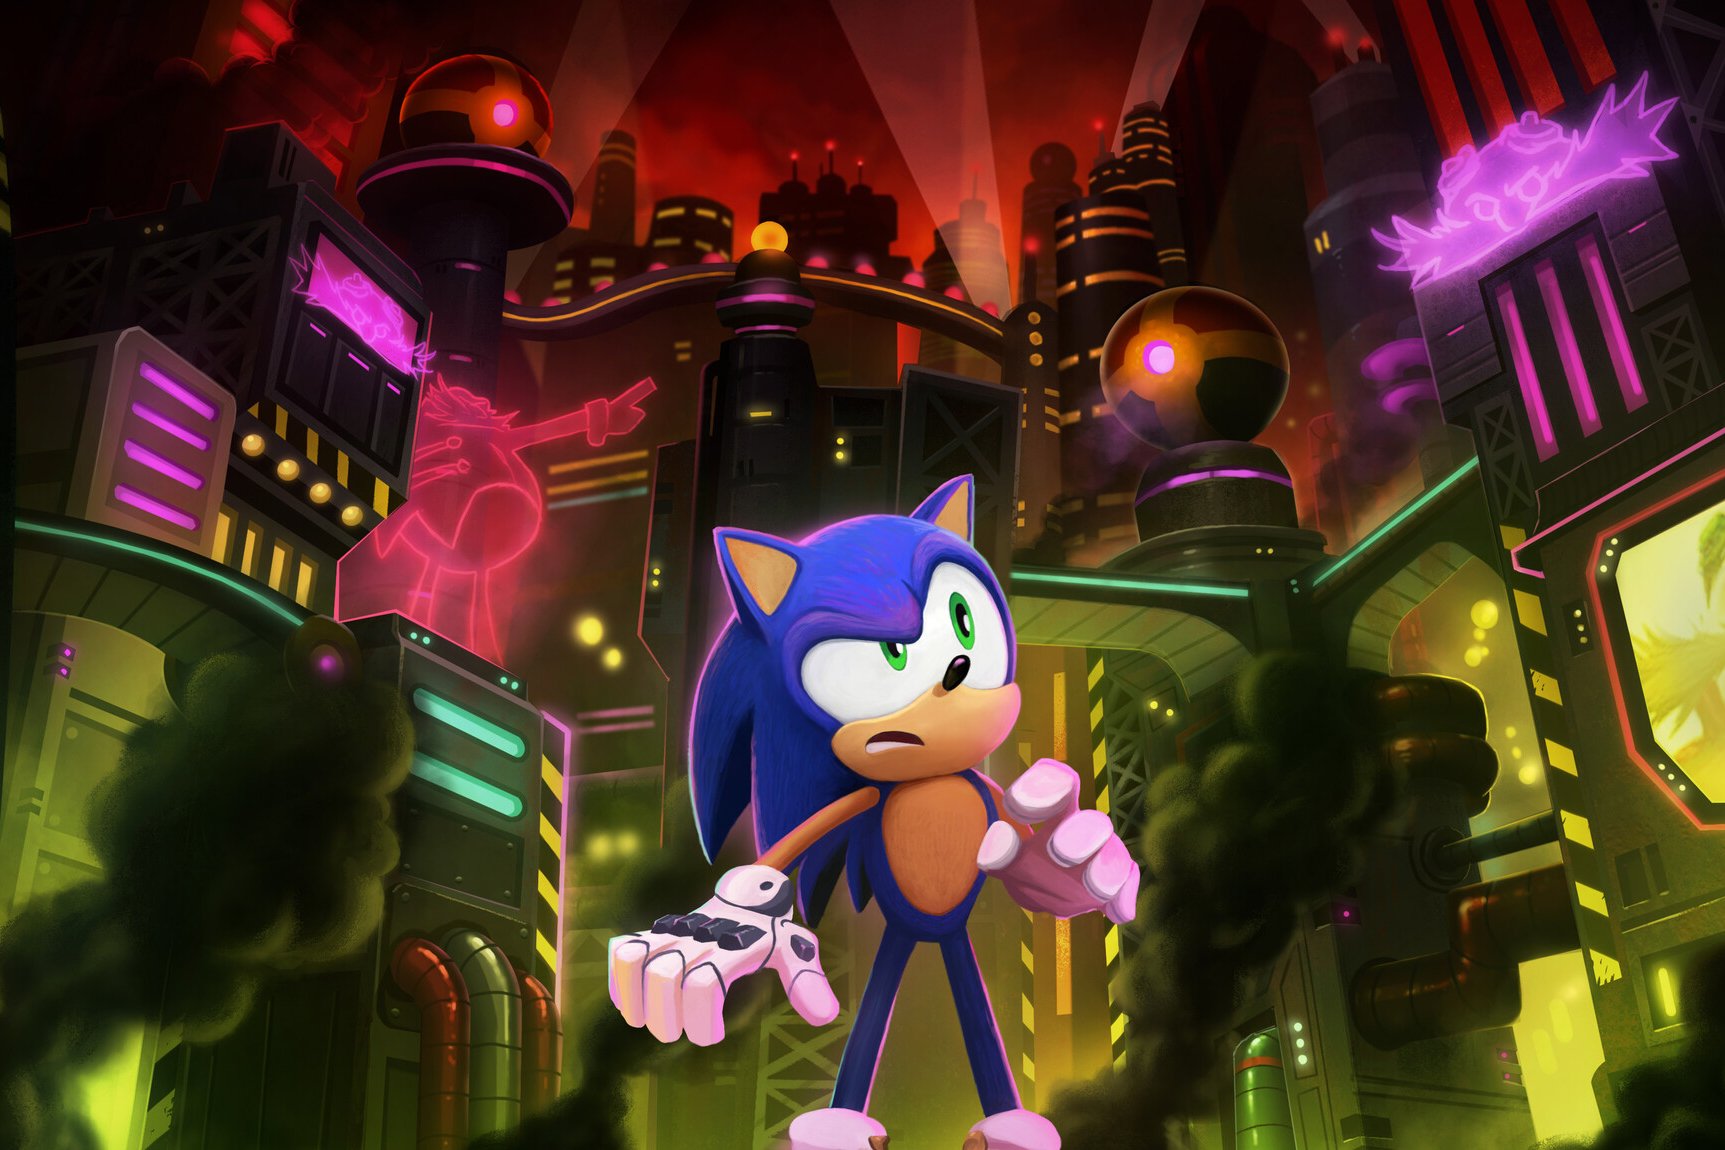 Sonic Tales: 5ª Temporada – Especial Sonic X Image Comics